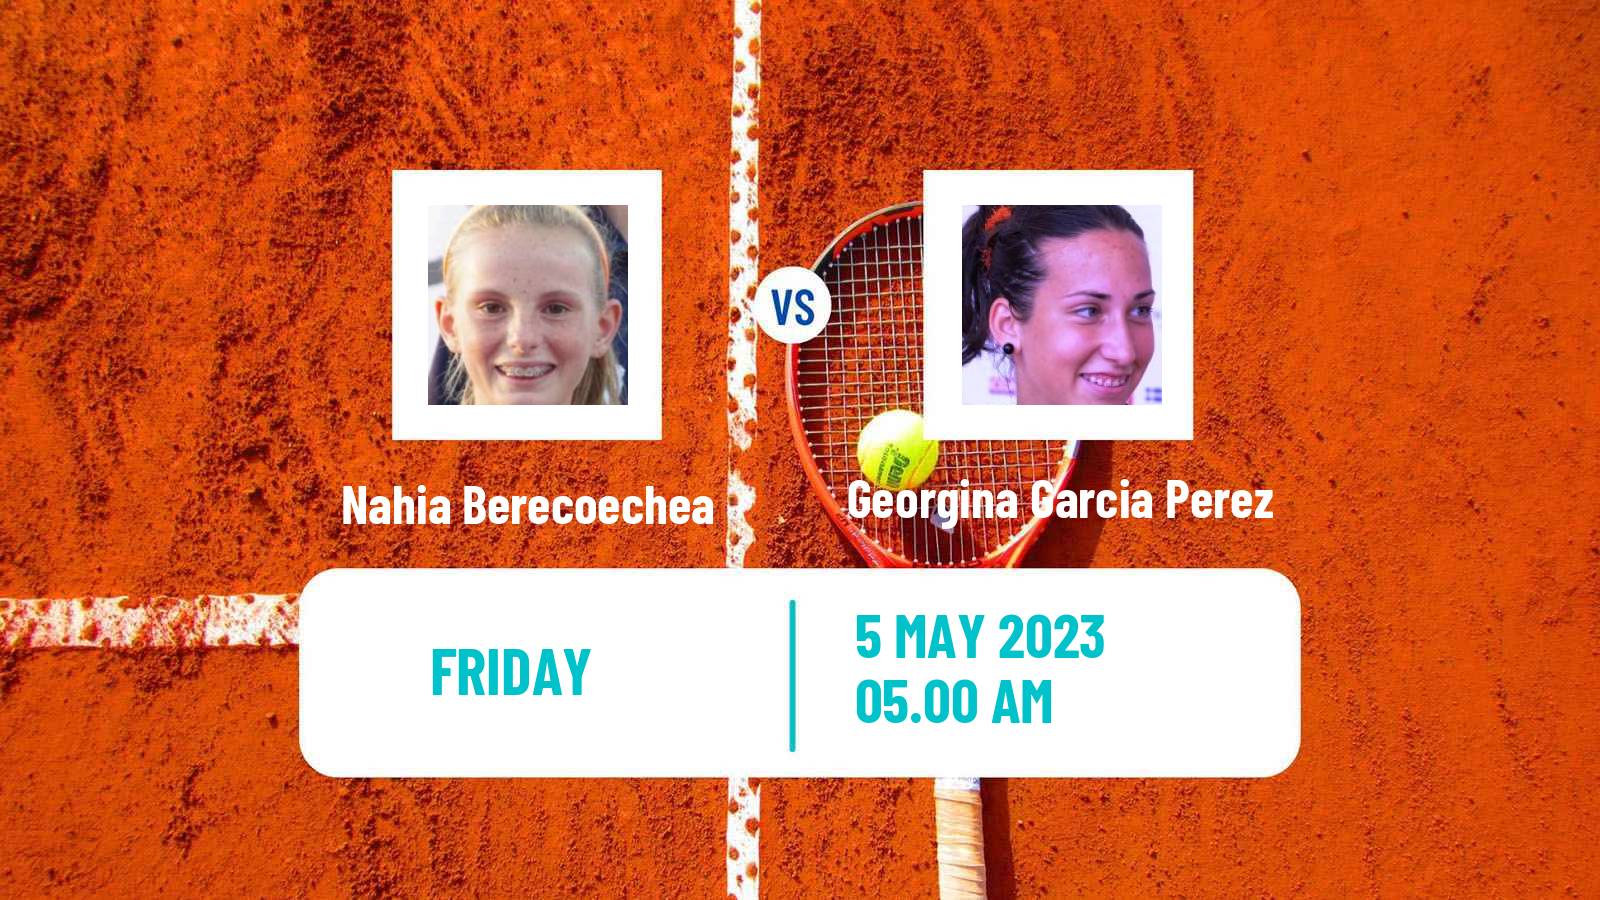 Tennis ITF Tournaments Nahia Berecoechea - Georgina Garcia Perez